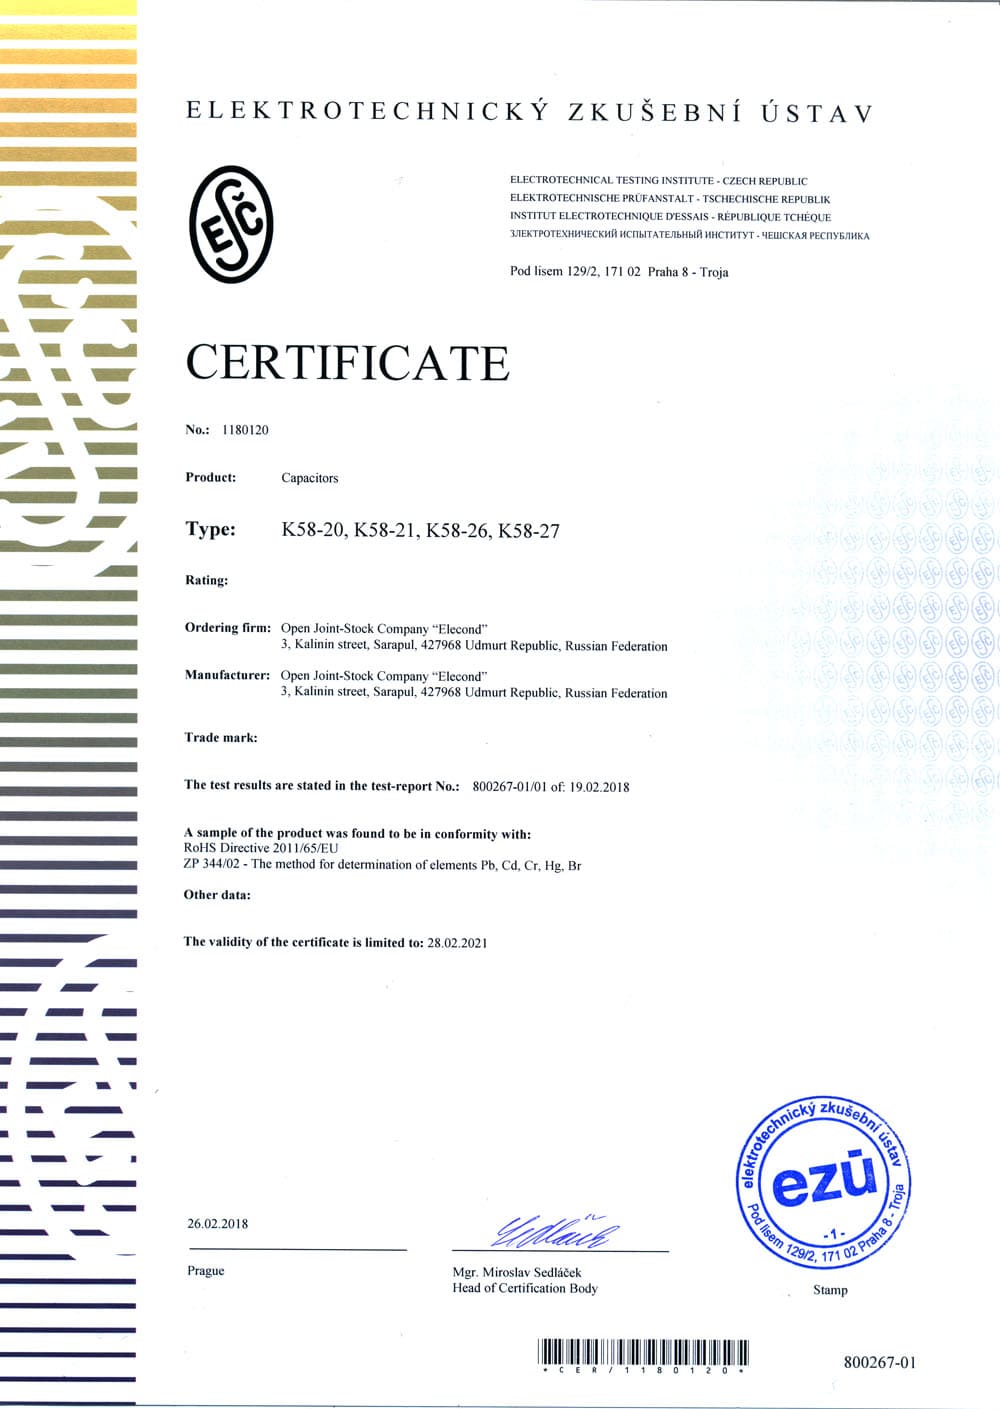 Сертификат соответствия директиве ROHS 2011/65/EU конденсаторов К58